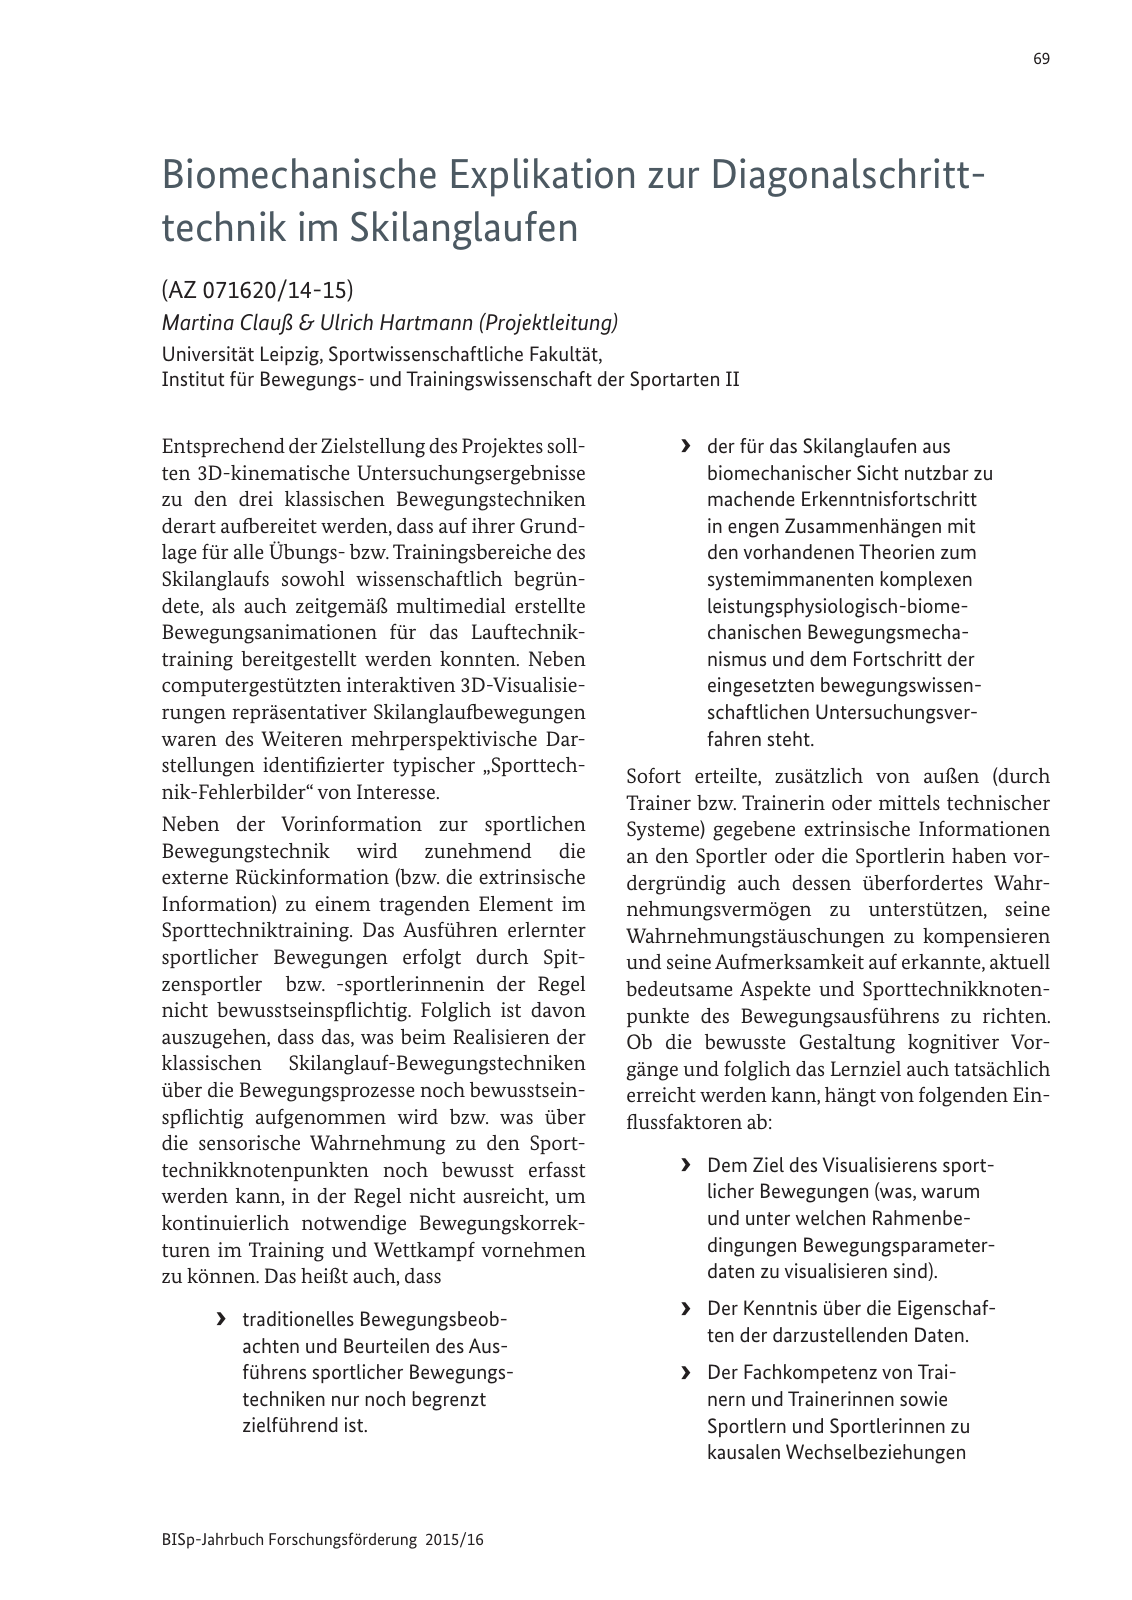 Vorschau BISp-Jahrbuch Forschungsförderung 2015/16 Seite 71